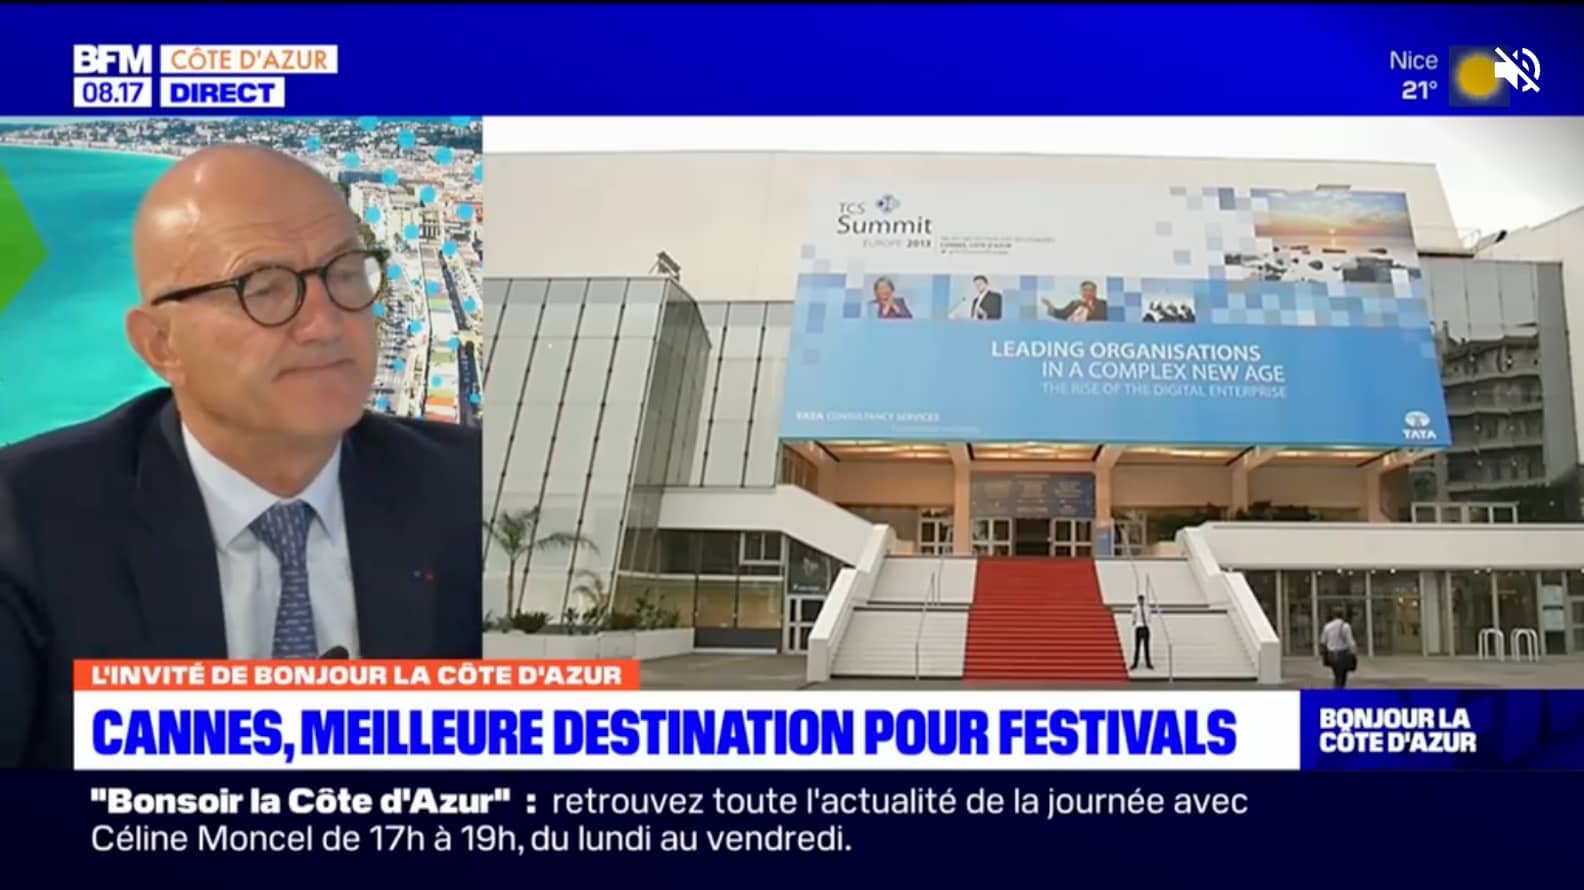 BFM Côte d’azur : « Un grand chelem », Cannes sacrée meilleure destination pour festivals